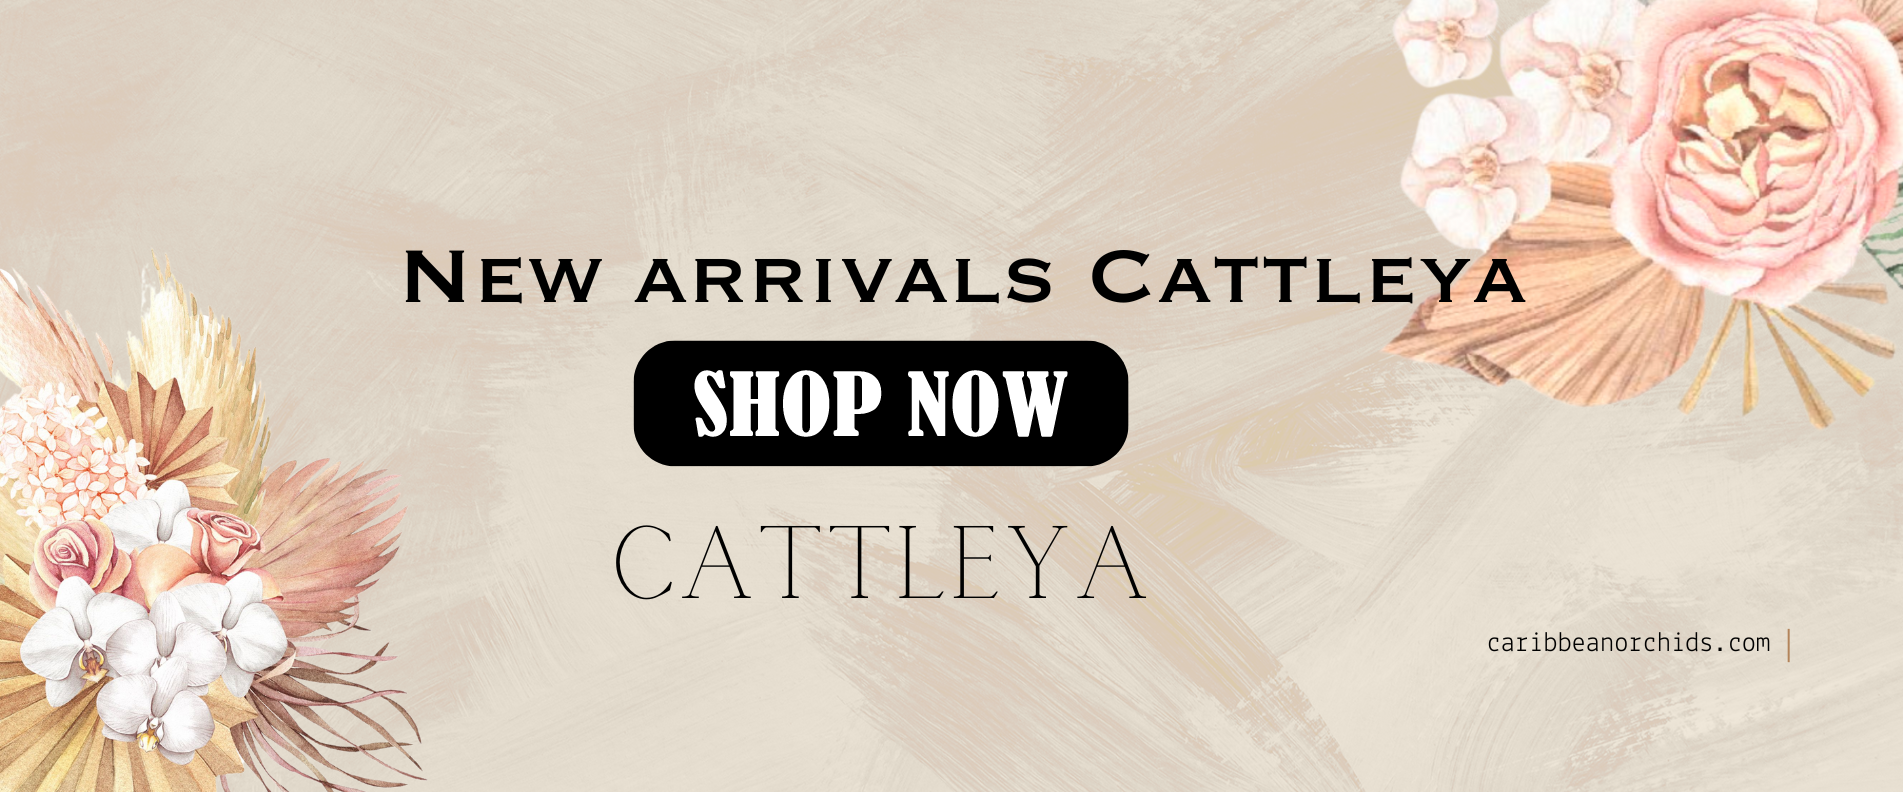 Cattleya-es